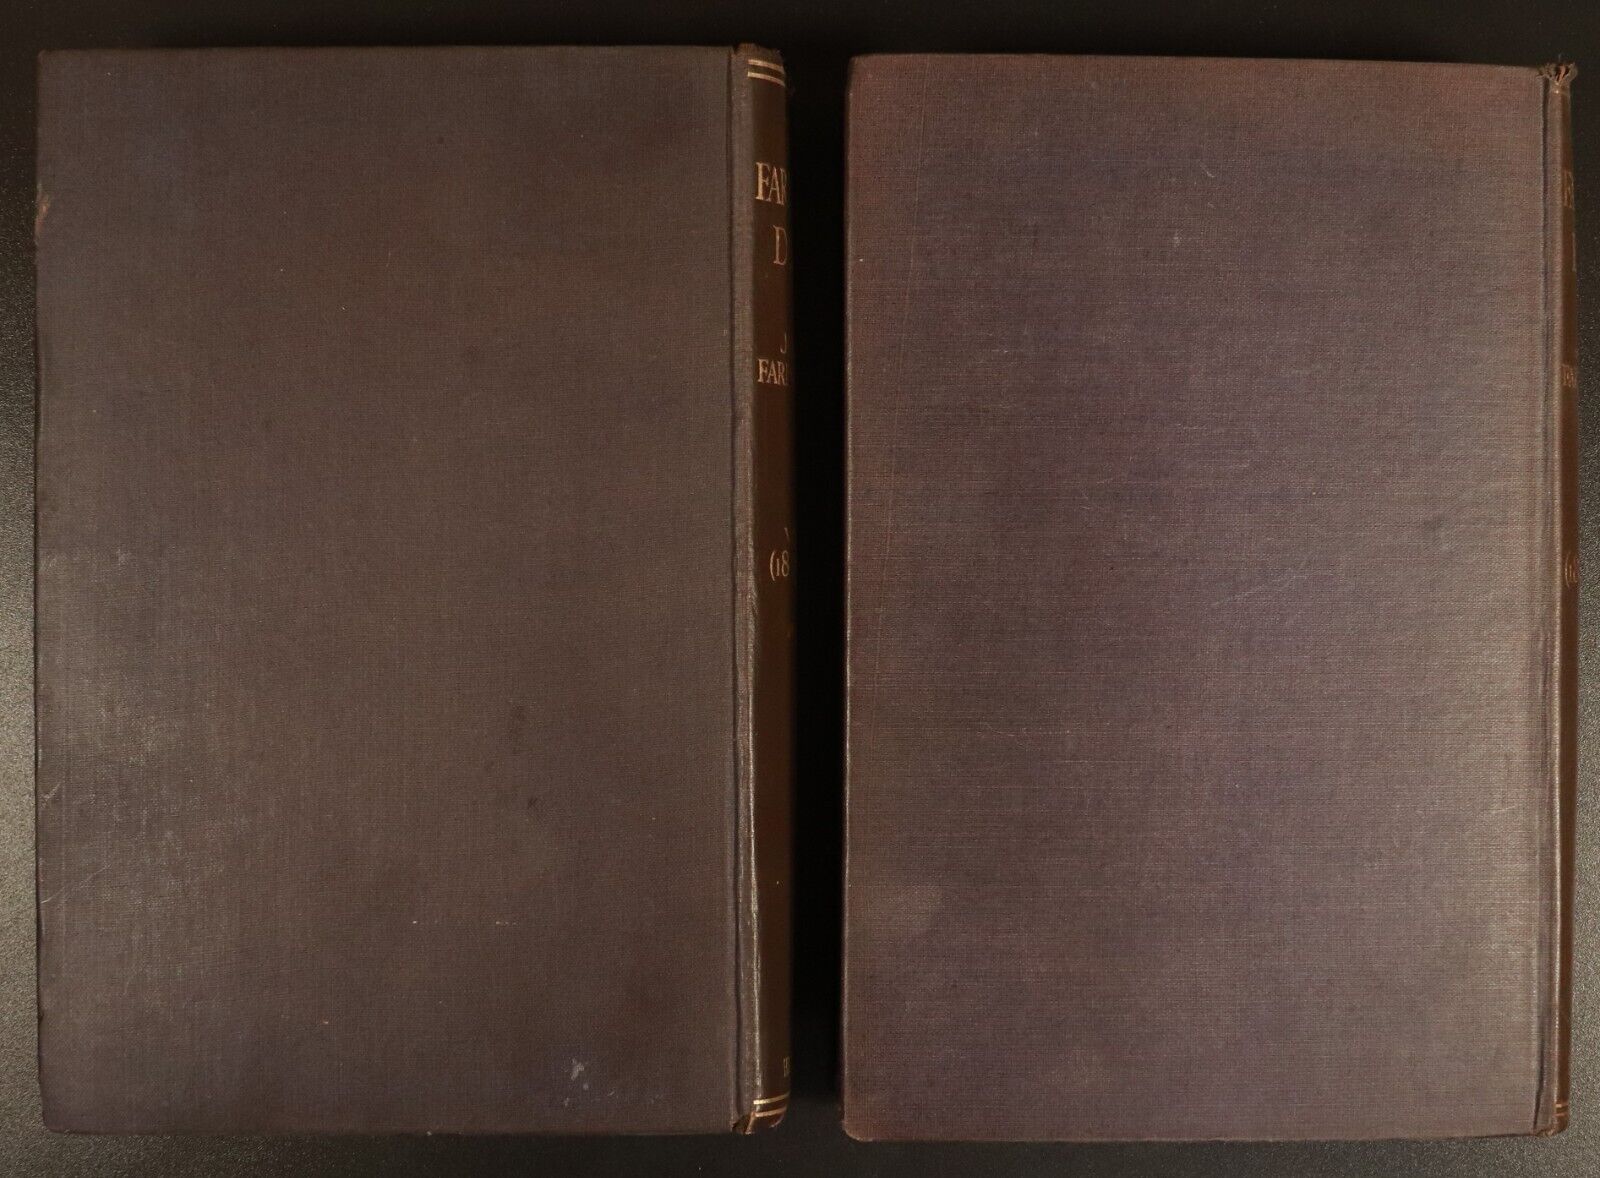 1925 2vol The Farington Diary by Joseph Farington Antique British History Books